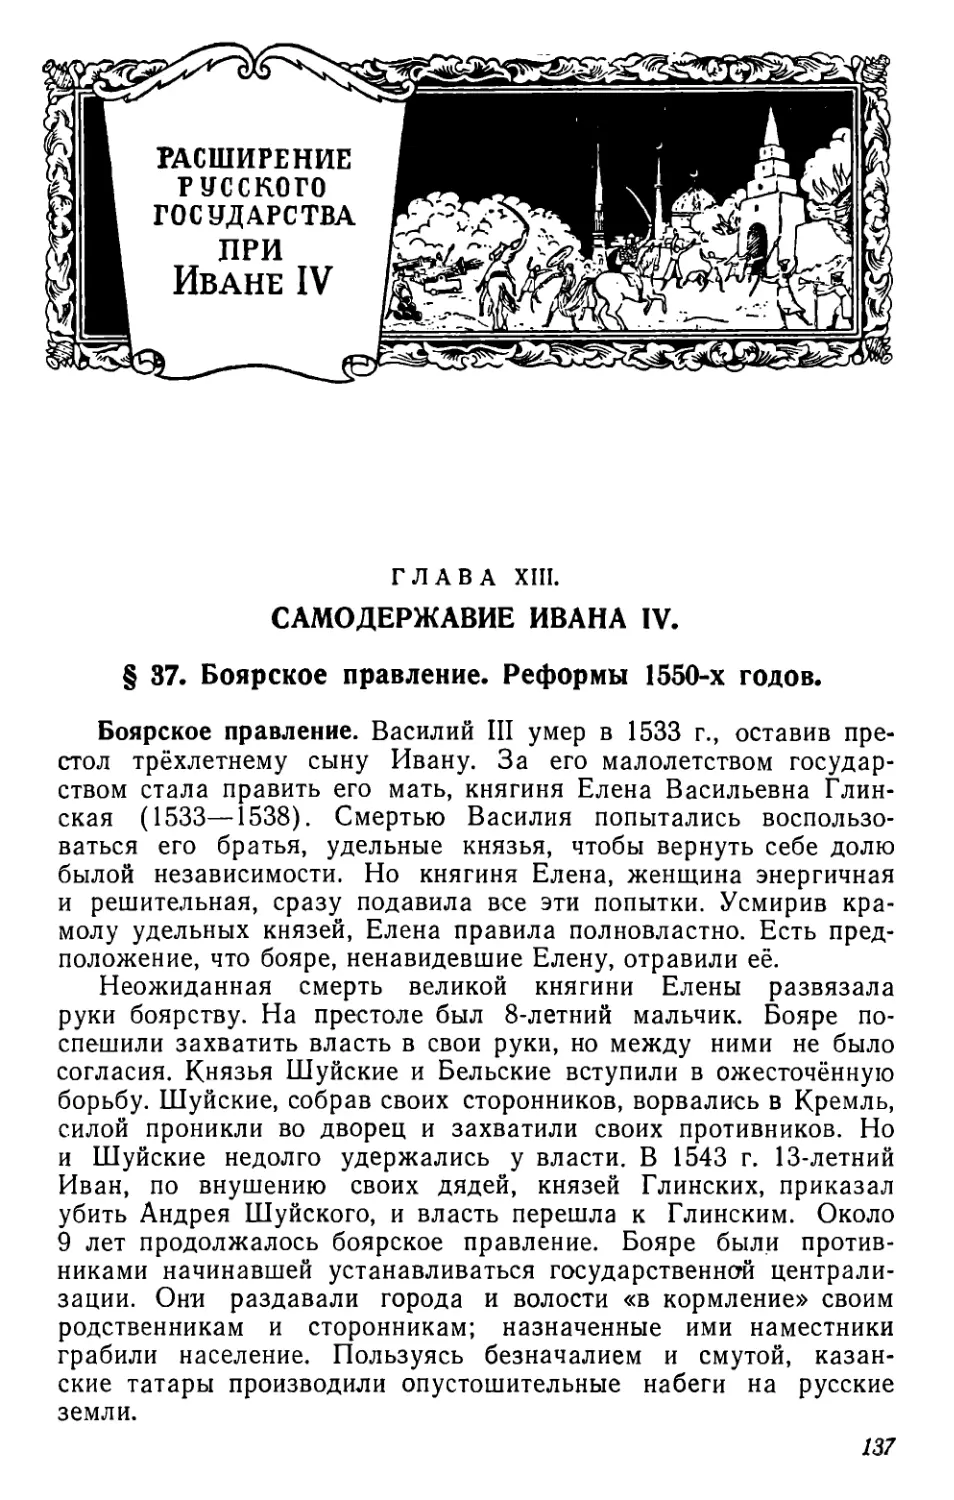 Расширение Русского государства при Иване IV